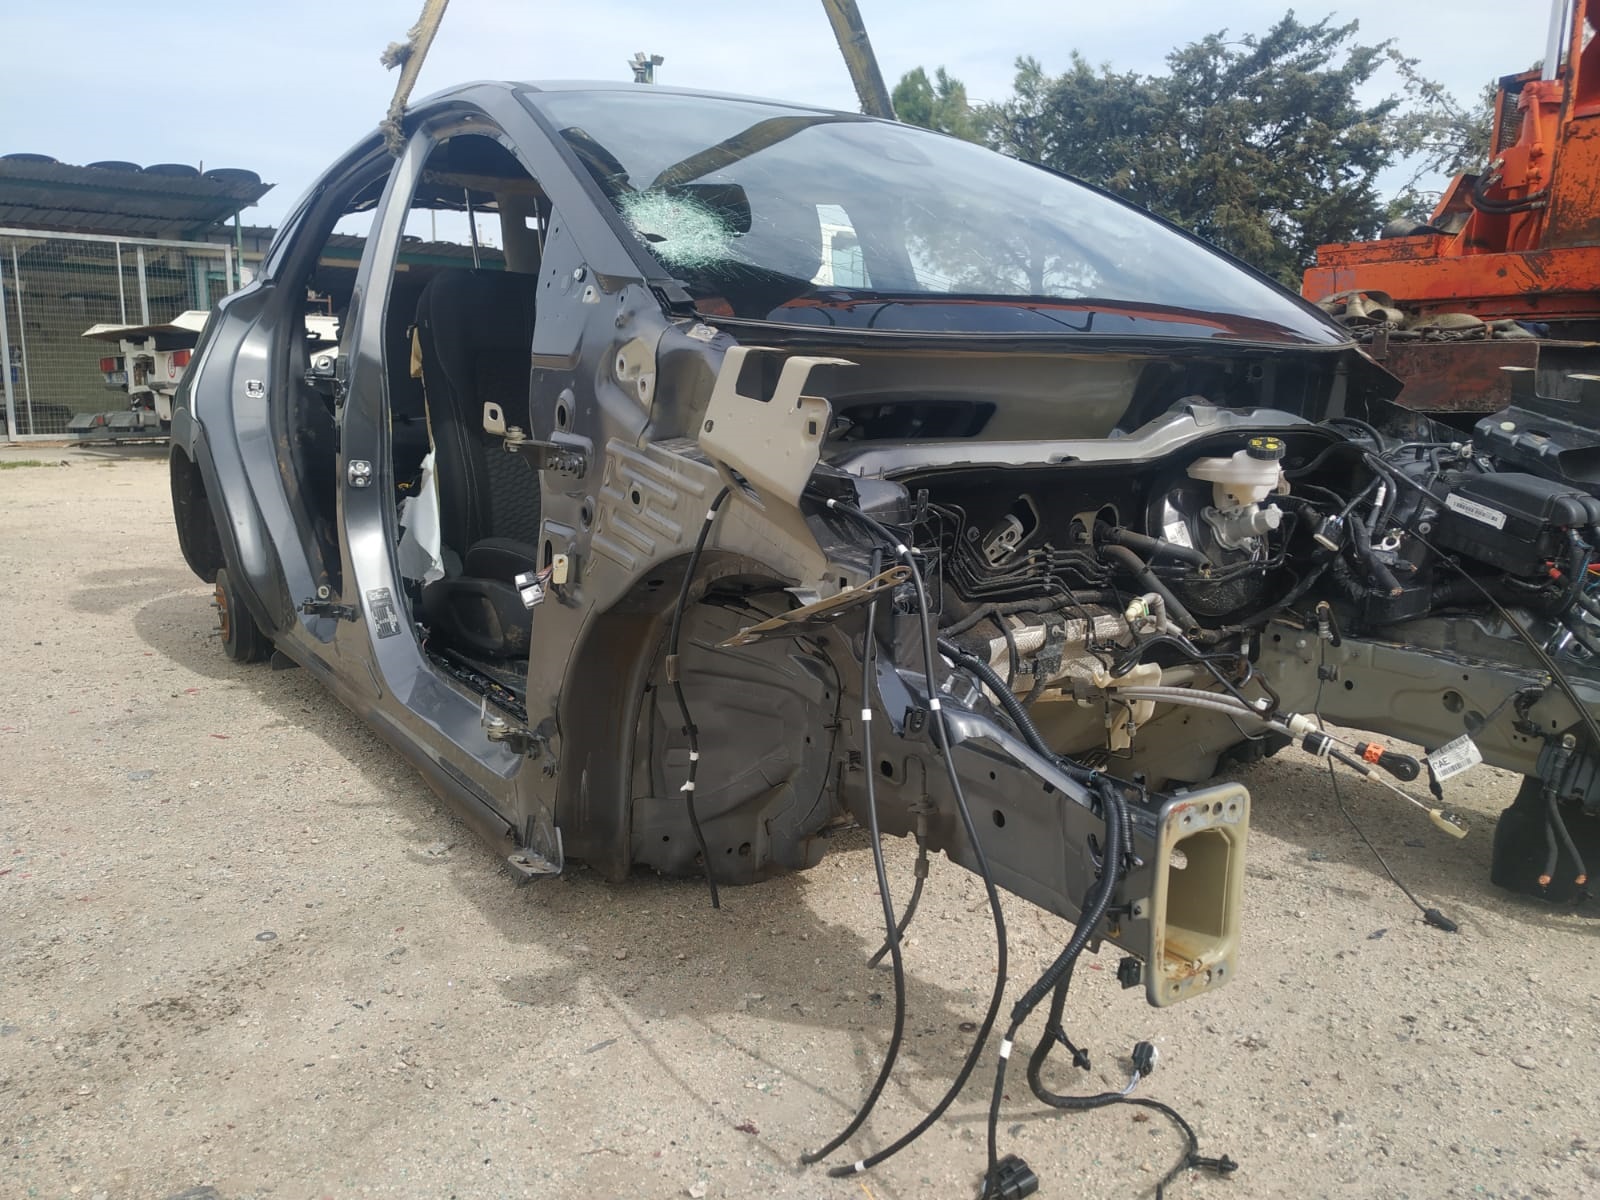 Scopri di più sull'articolo Scocca ford puma del 2022 disponibile nel nostro autoparco di demolizione per la vendita dei ricambi usati. Info solo telefonando allo 3485846422.